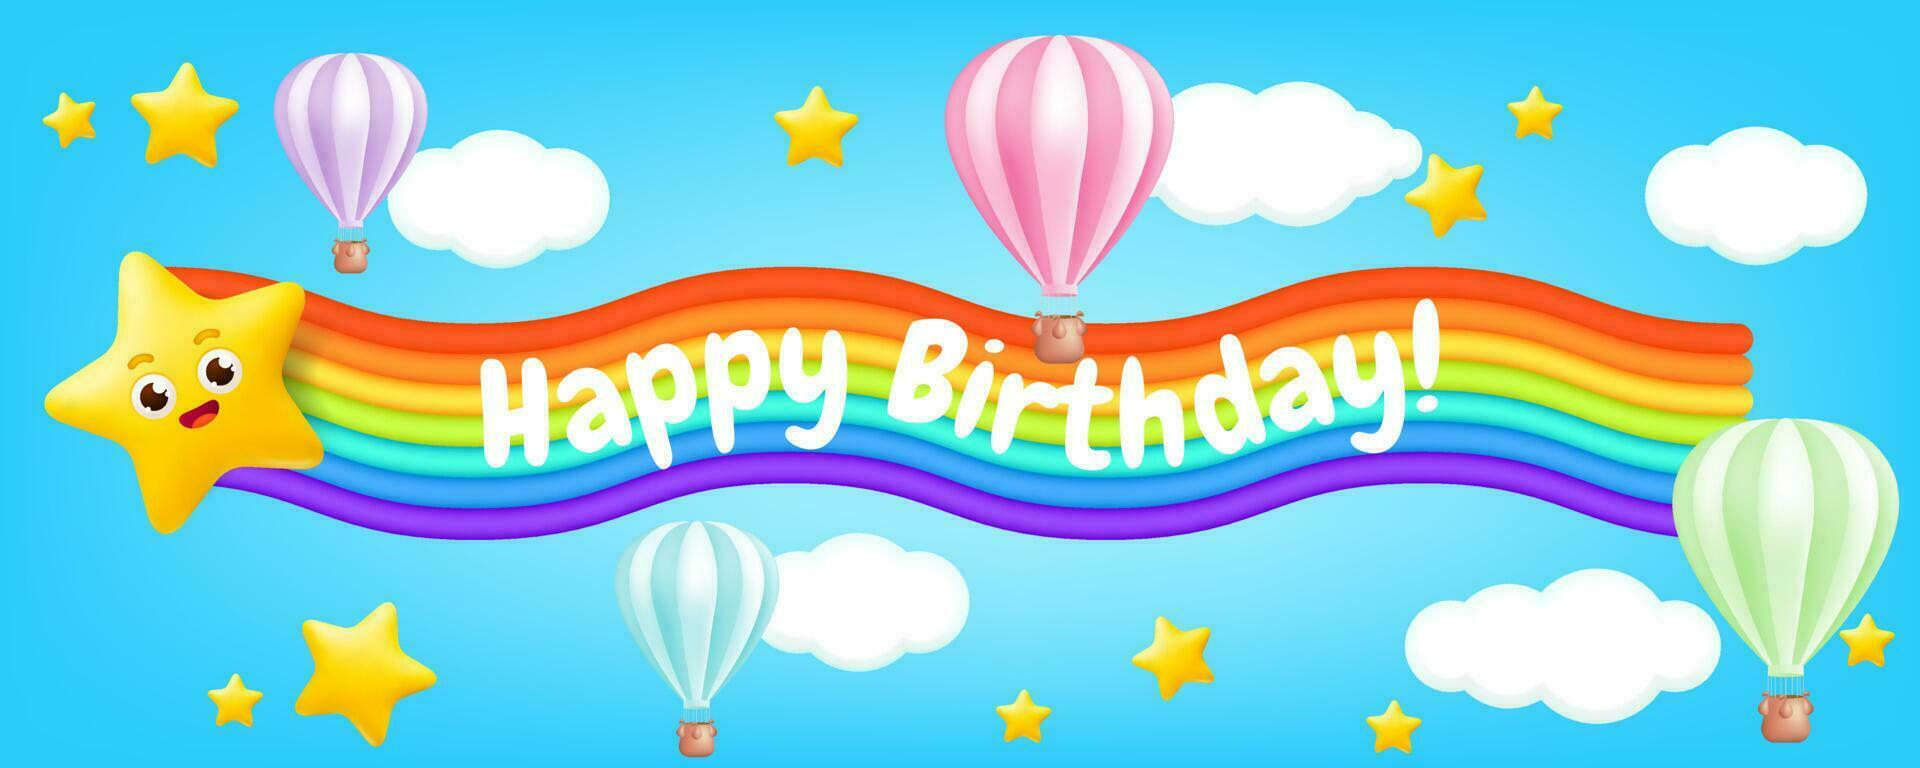 3d vector illustratie van een schattig tekenfilm lucht ballon vliegend door een pastel blauw lucht met sterren, wolken, en een regenboog vlag. perfect voor kinderen ontwerpen, verjaardag kaarten, en partij uitnodigingen.